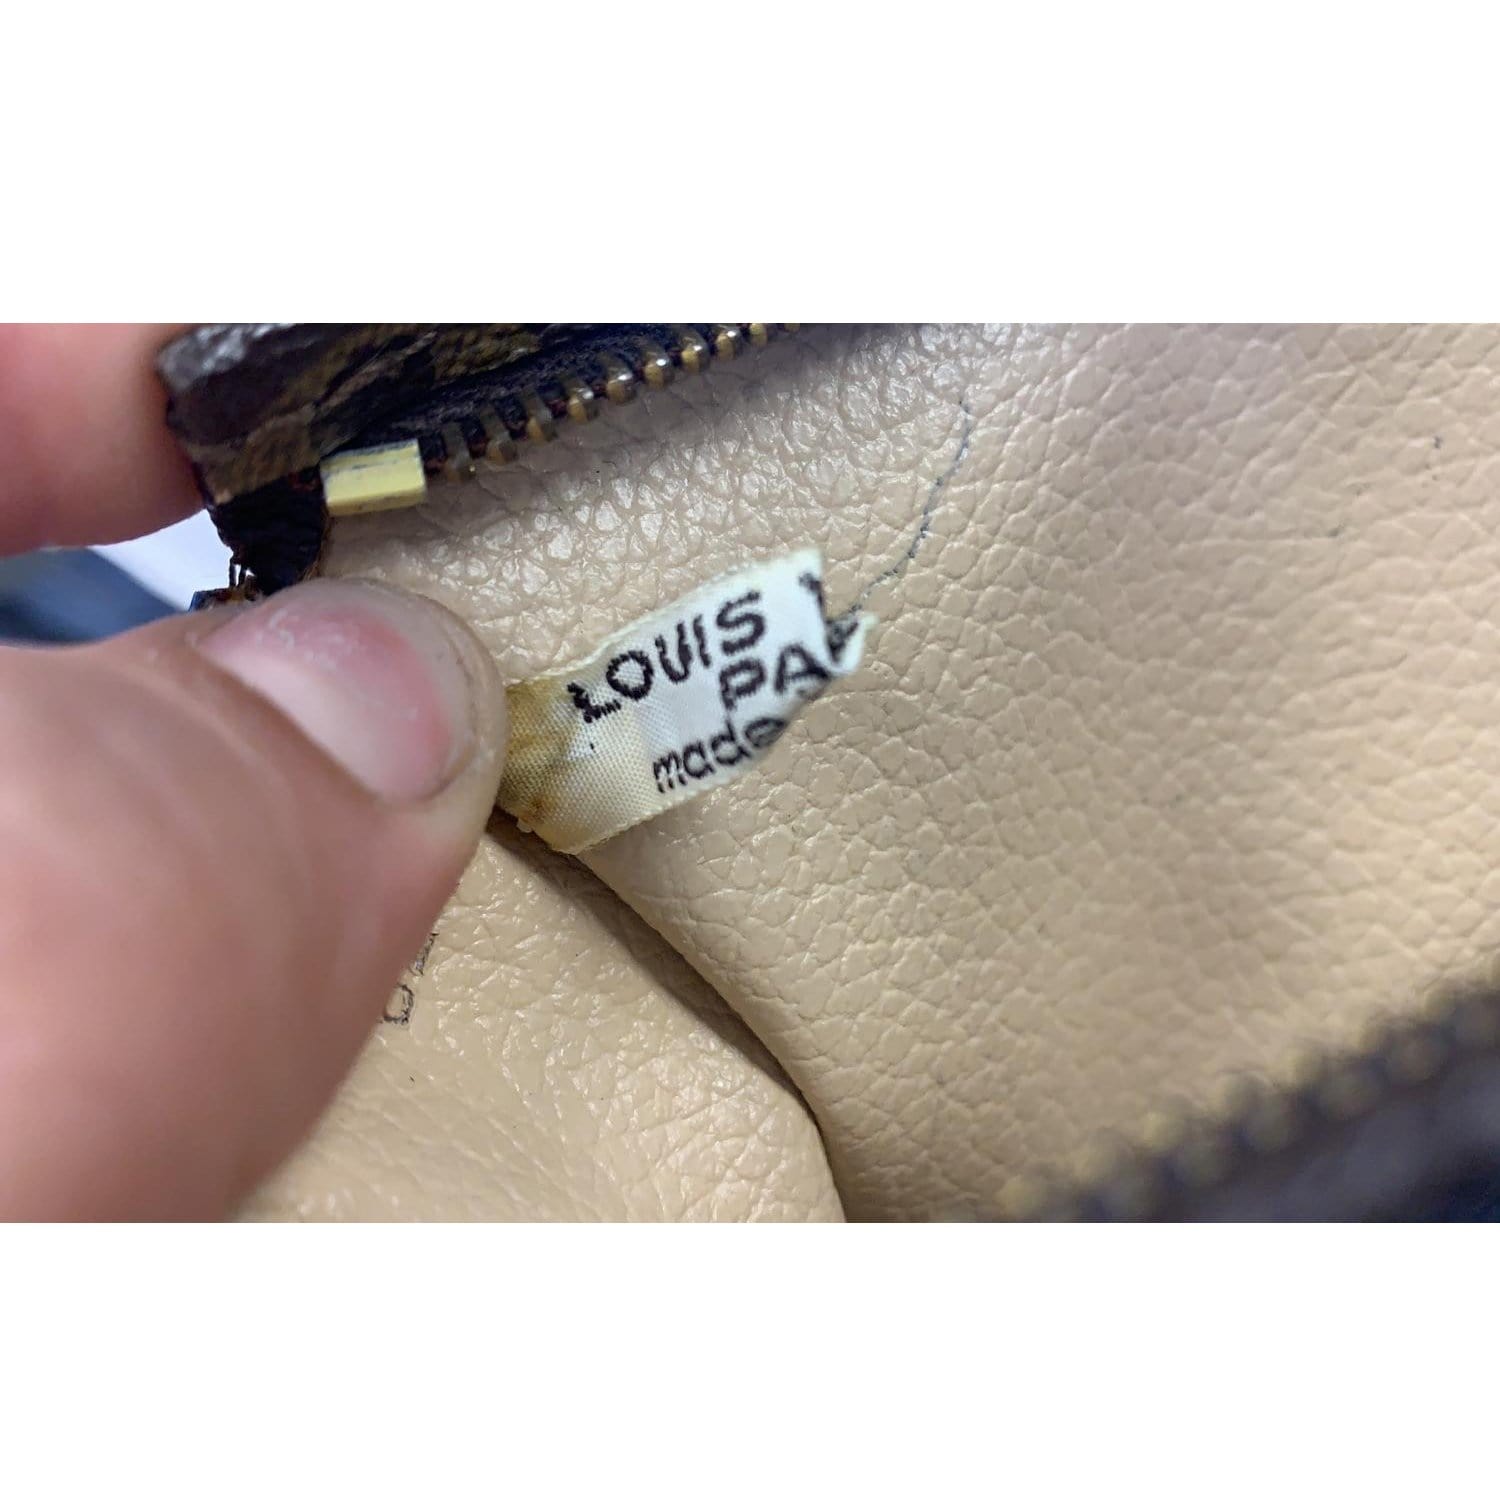 Trousse - Louis - Monogram - Pouch - 18 - M47526 – dct - Toilette -  ep_vintage luxury Store - Vuitton - Louis Vuitton pre-owned Citadine PM  tote bag